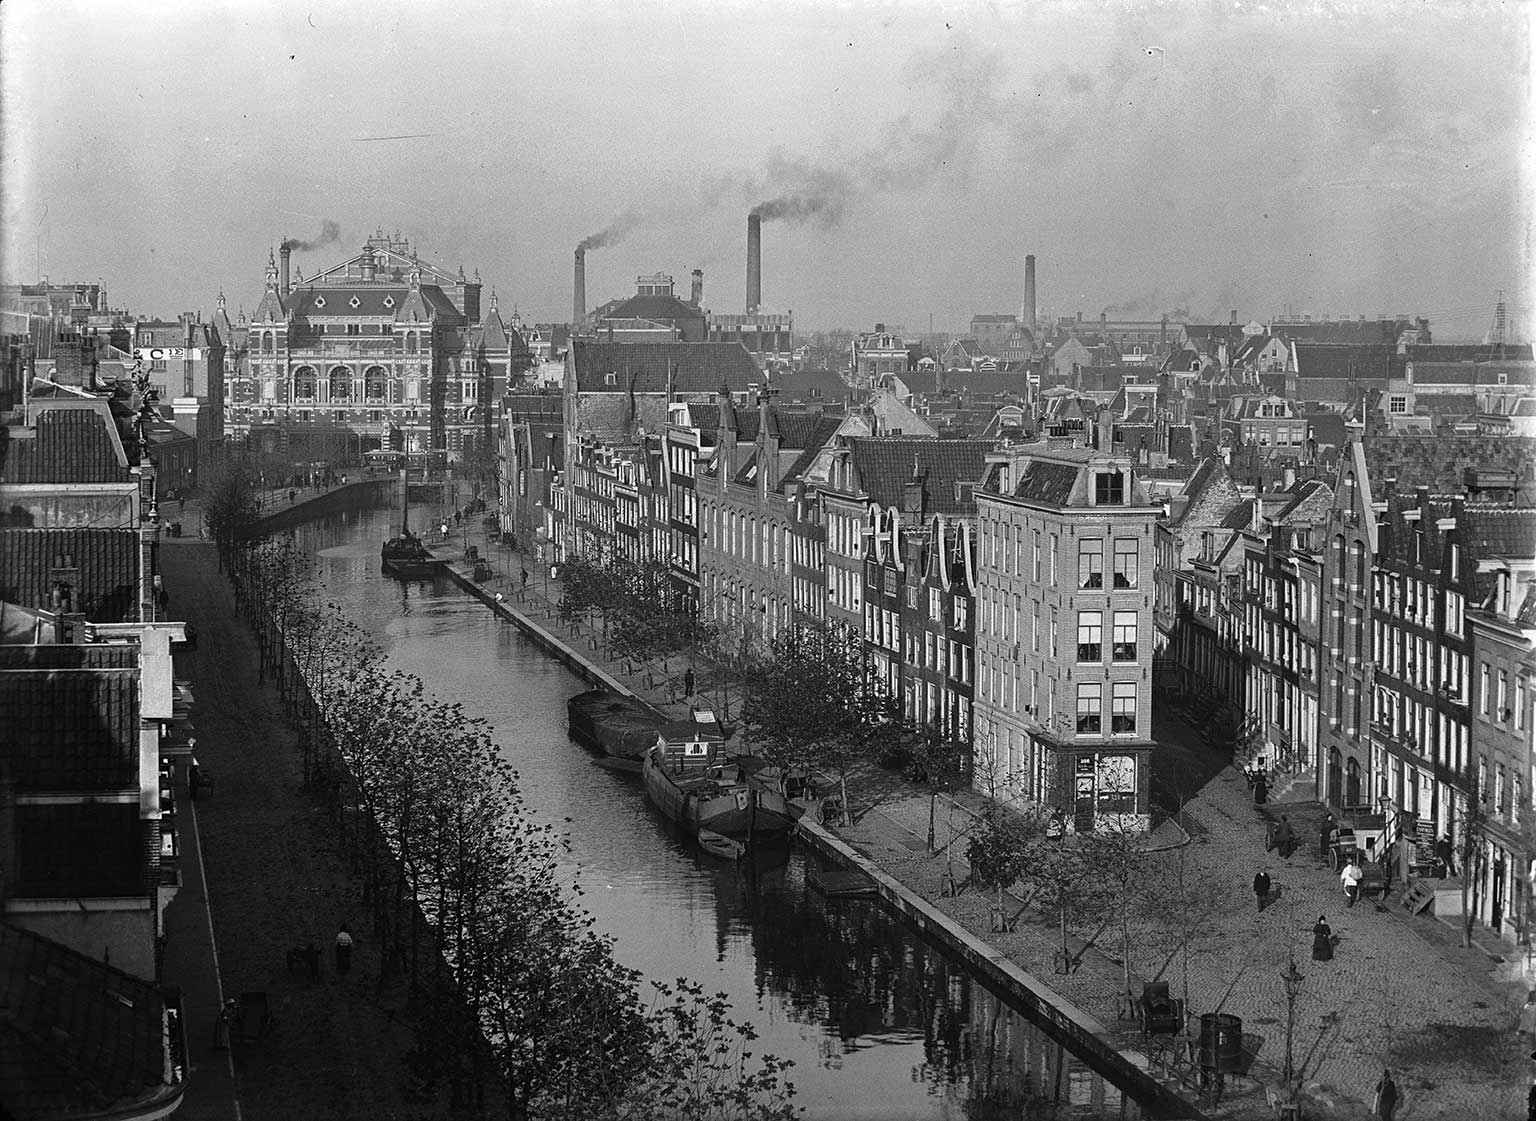 Lijnbaansgracht, Amsterdam, in 1894, gefotografeerd door Jacob Olie